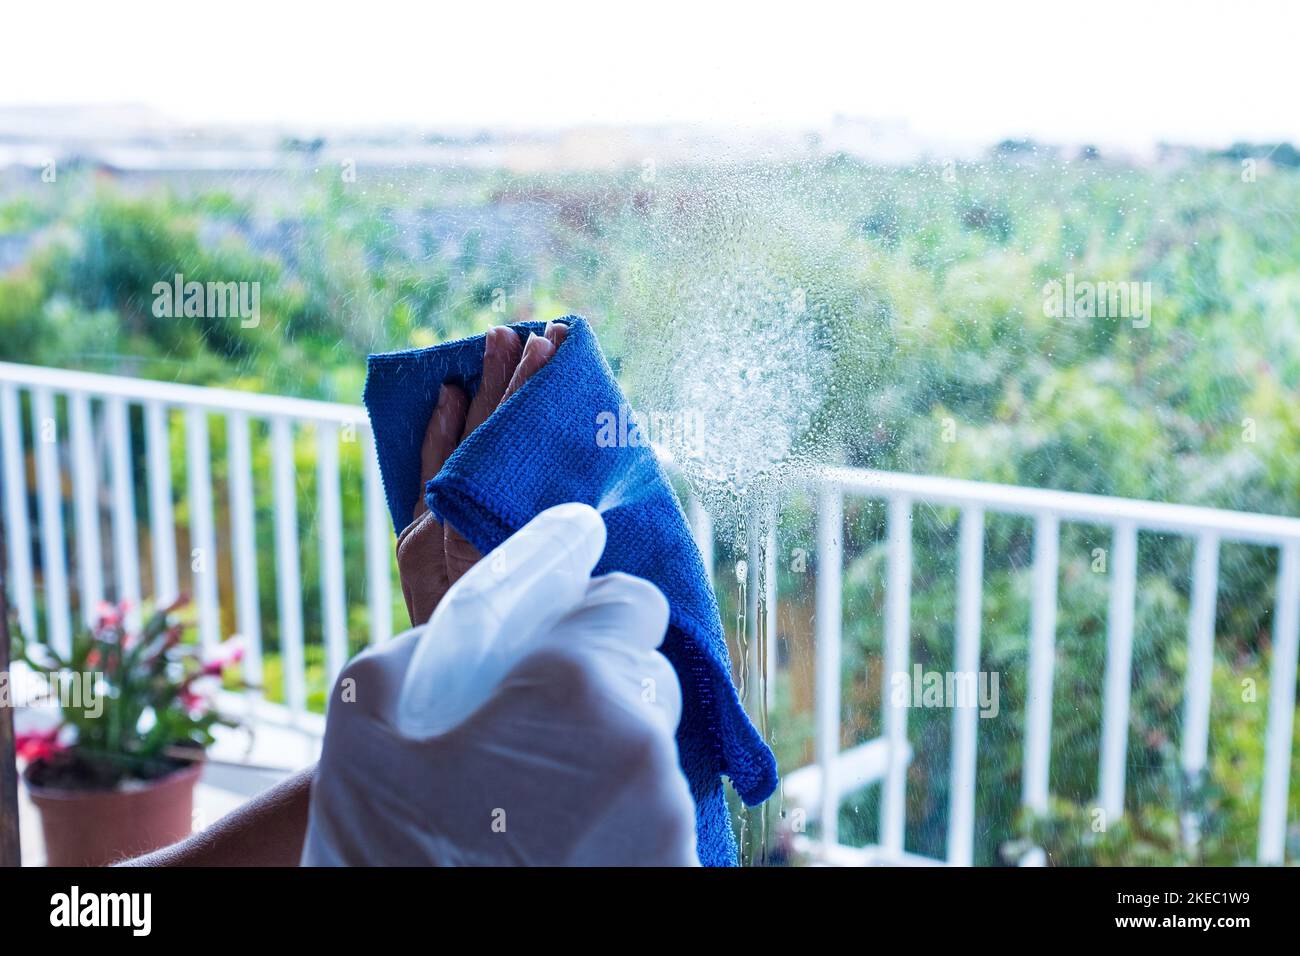 primo piano di mani o uomo o donna che pulisce il vetro della finestra della casa con spray per uccidere ogni germe o batteri all'interno della casa - casalinga che lavora nel lavoro di lavaggio e pulizia con disinfettante Foto Stock